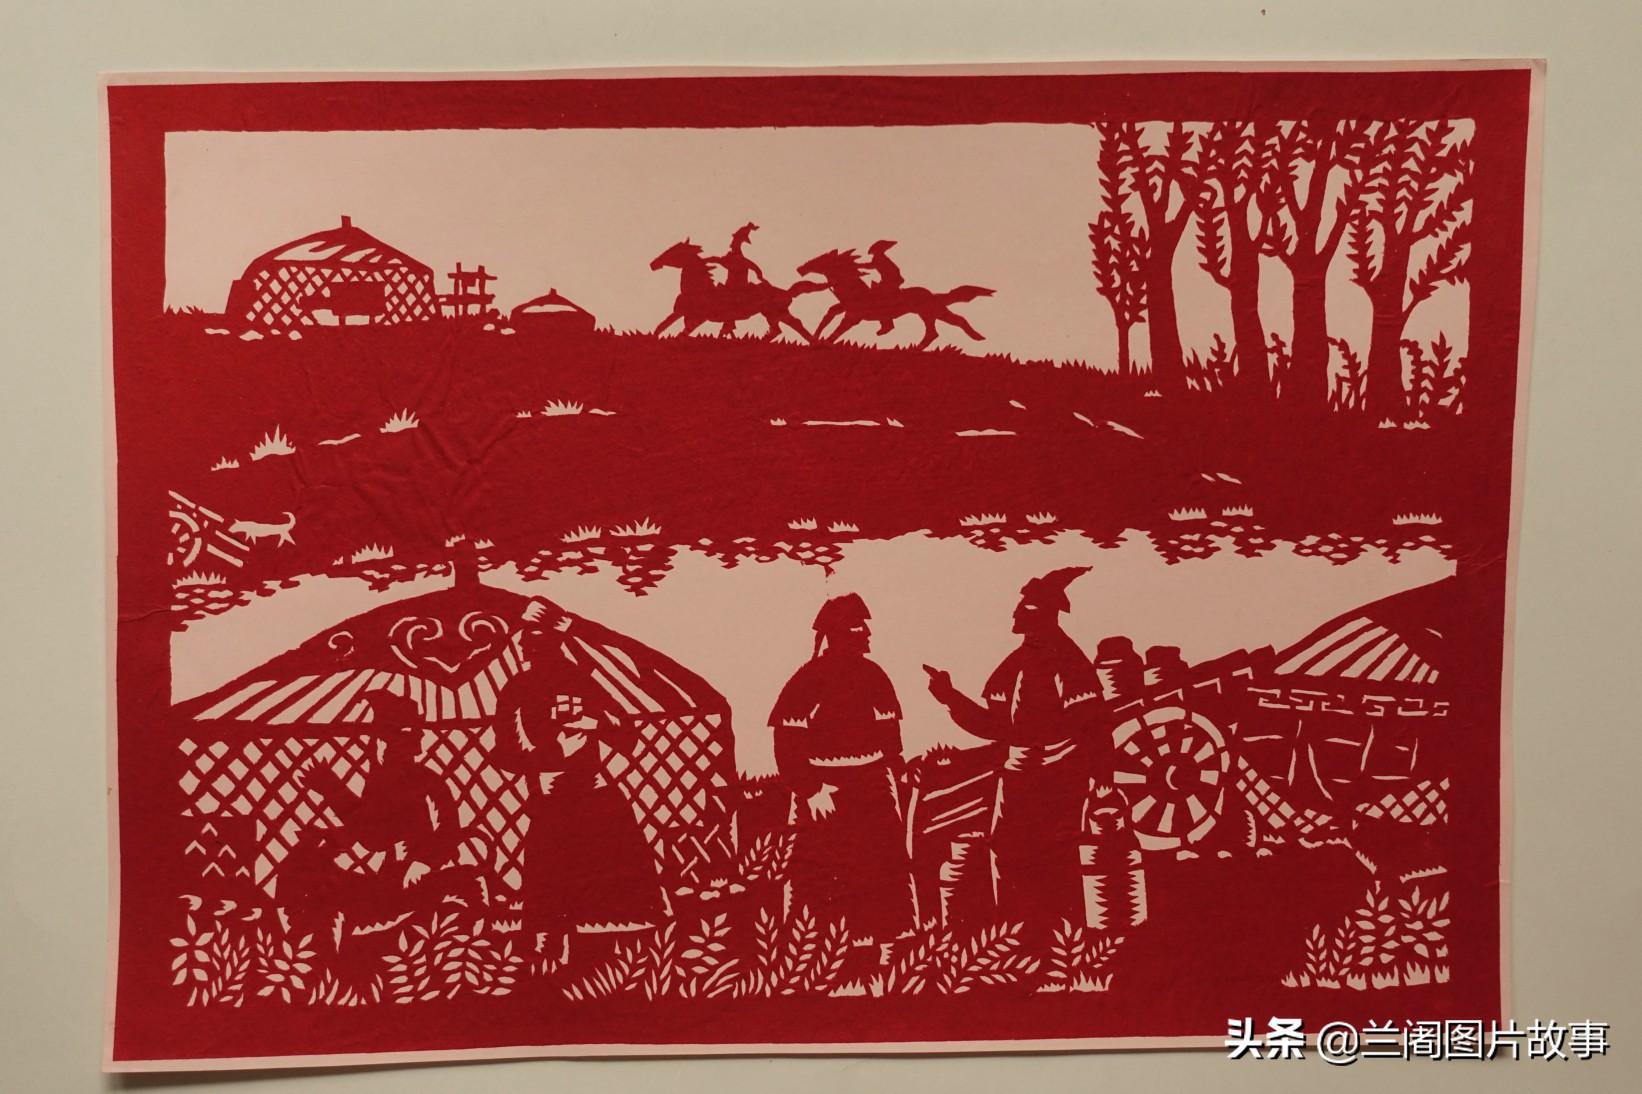 蒙古族剪纸风格单纯质朴,富有草原的乡土情趣